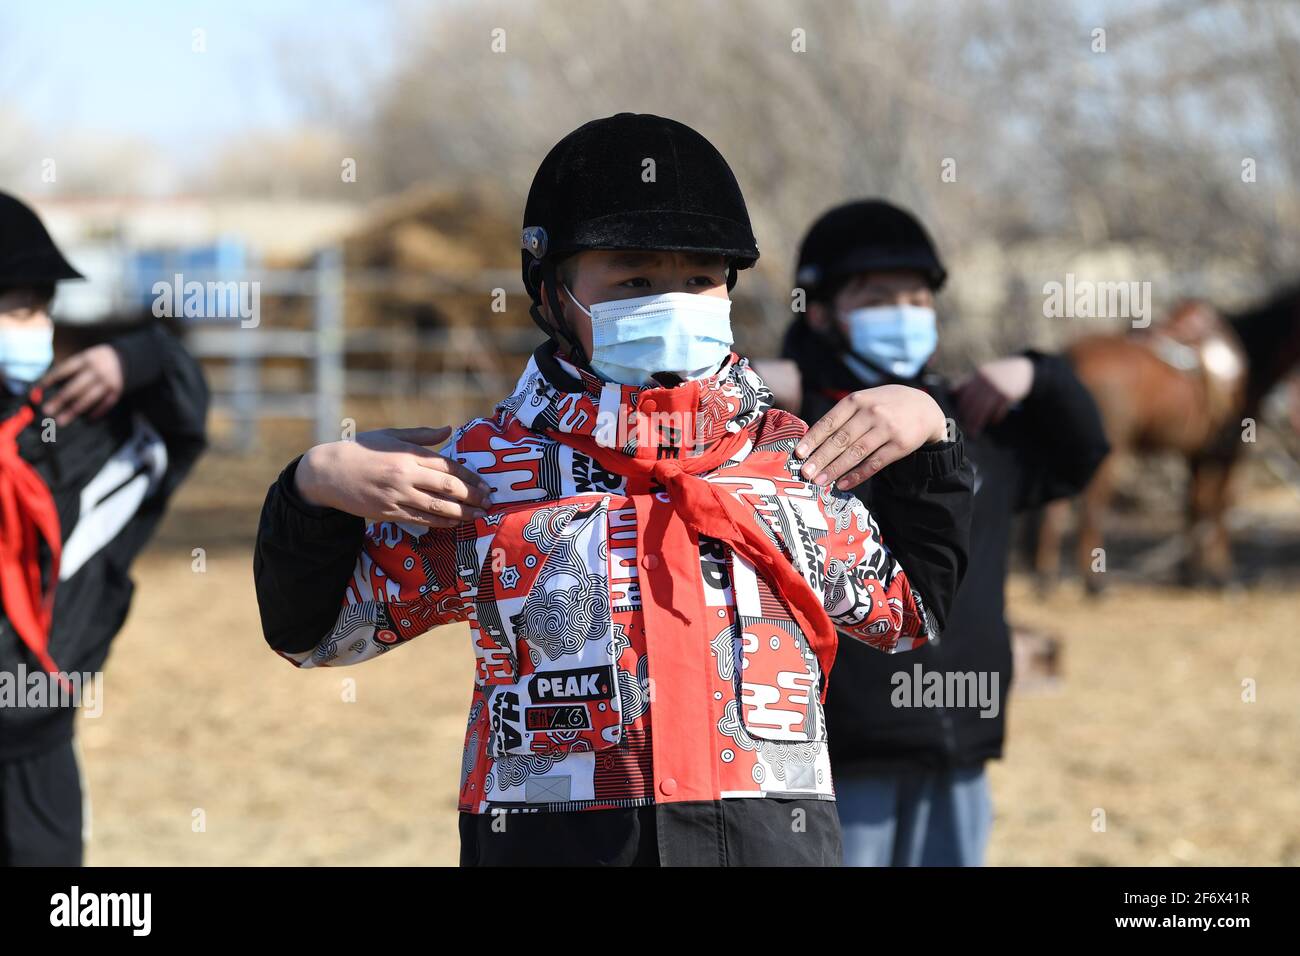 (210403) -- BURQIN, 3 aprile 2021 (Xinhua) -- Parasat Zhumabek, uno studente di grado senventesimo della Oymak Boarding School, si riscalda durante una classe equestre nella contea di Burqin, nella regione autonoma di Xinjiang Uygur, 30 marzo 2021. La gente nella regione autonoma di Xinjiang Uygur ha una tradizione di allevamento di cavalli e di equitazione. La scuola di imbarco di Oymak ha cominciato ad offrire le classi equestri alla fine del 2019. Gli studenti, la maggior parte dei quali provengono da famiglie di pastori, imparano sia la conoscenza teorica che la pratica di equitazione sulle classi equestri. Dopo le lezioni, gli studenti si rafforzano fisicamente e amano Foto Stock